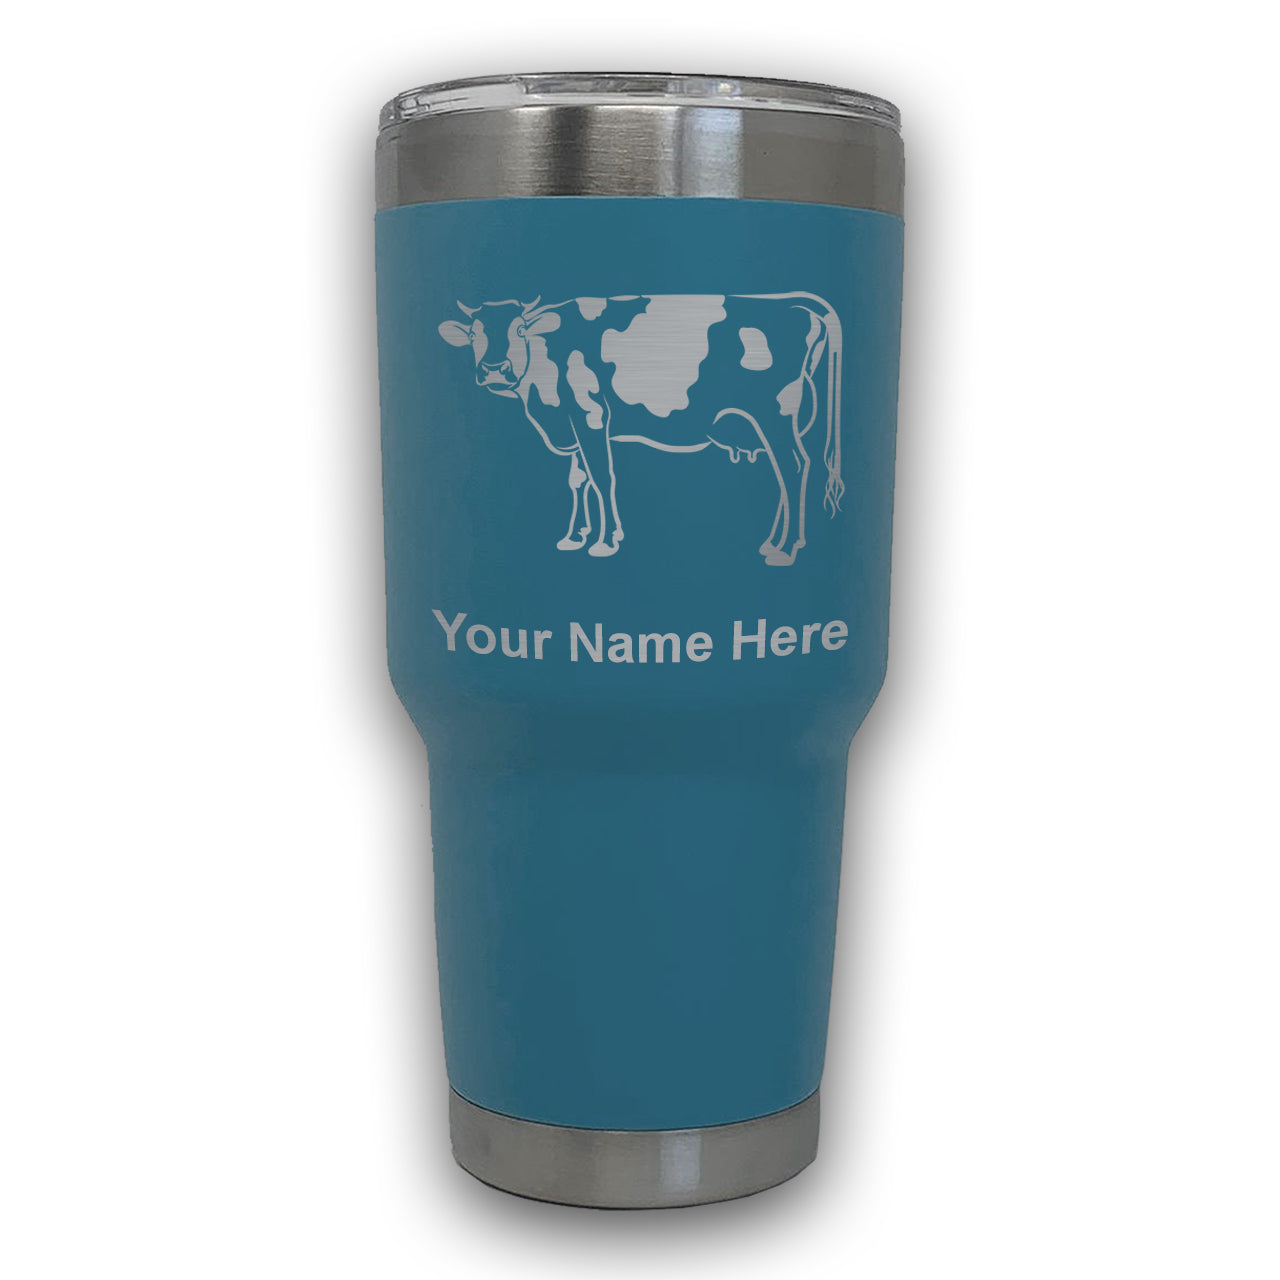 LaserGram 30oz Tumbler Mug, Cow, Personalized Engraving Included